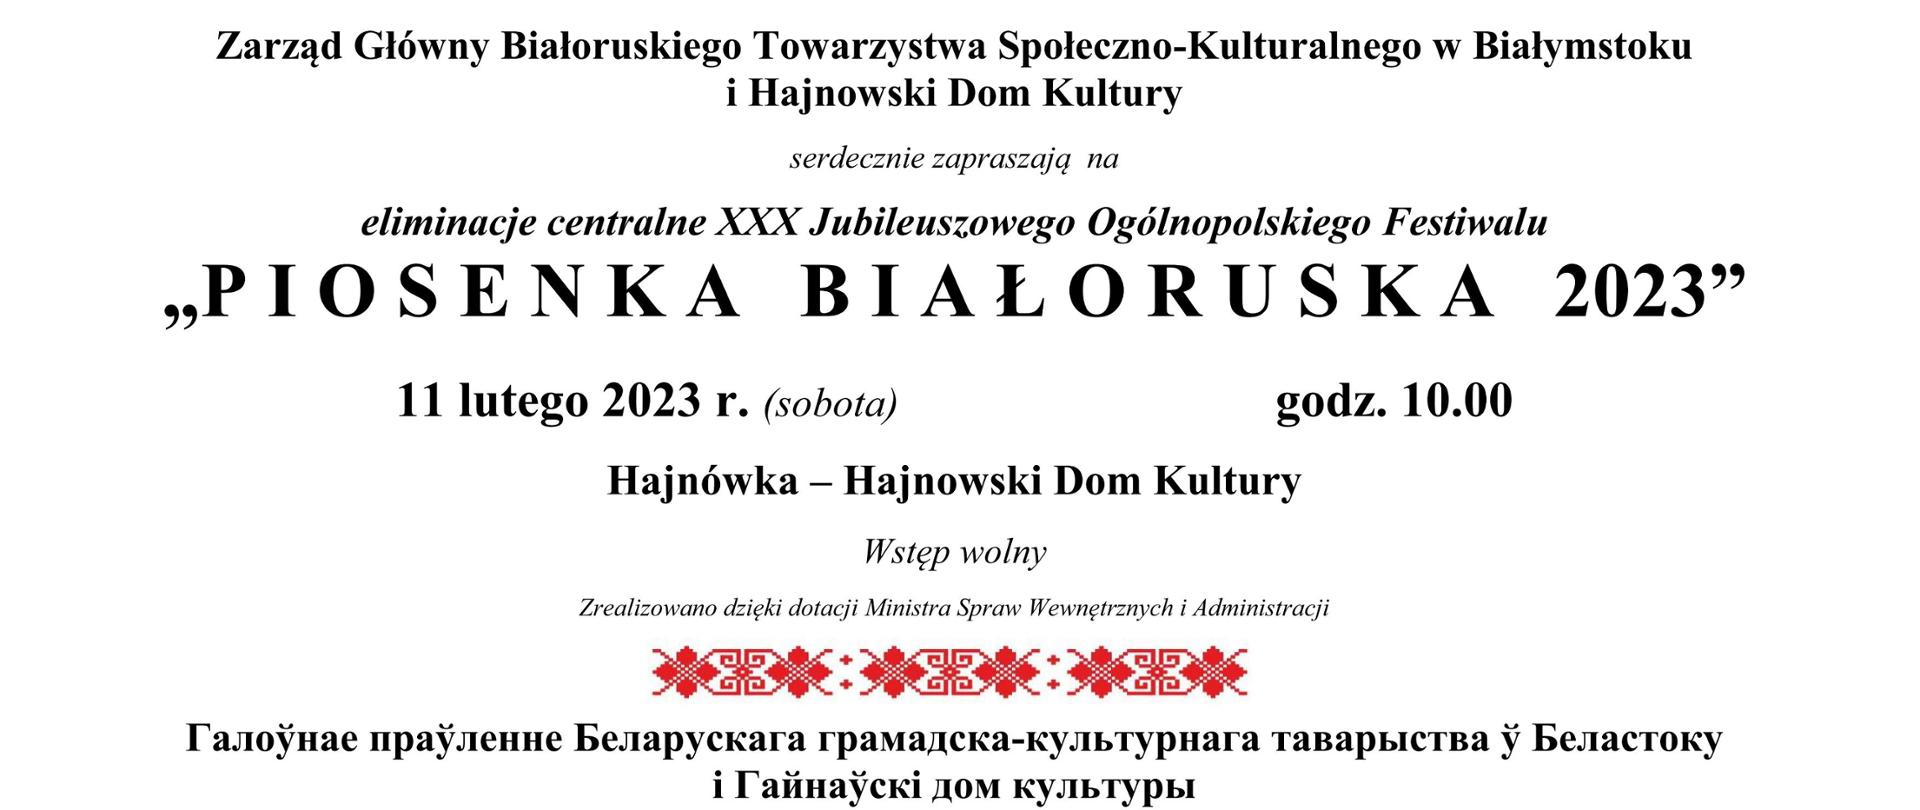 Plakat promujący wydarzenie - na plakacie inofmracje organizacyjne w języku polskim i białoruskim - tytuł wydarzenia, miejsce i termin